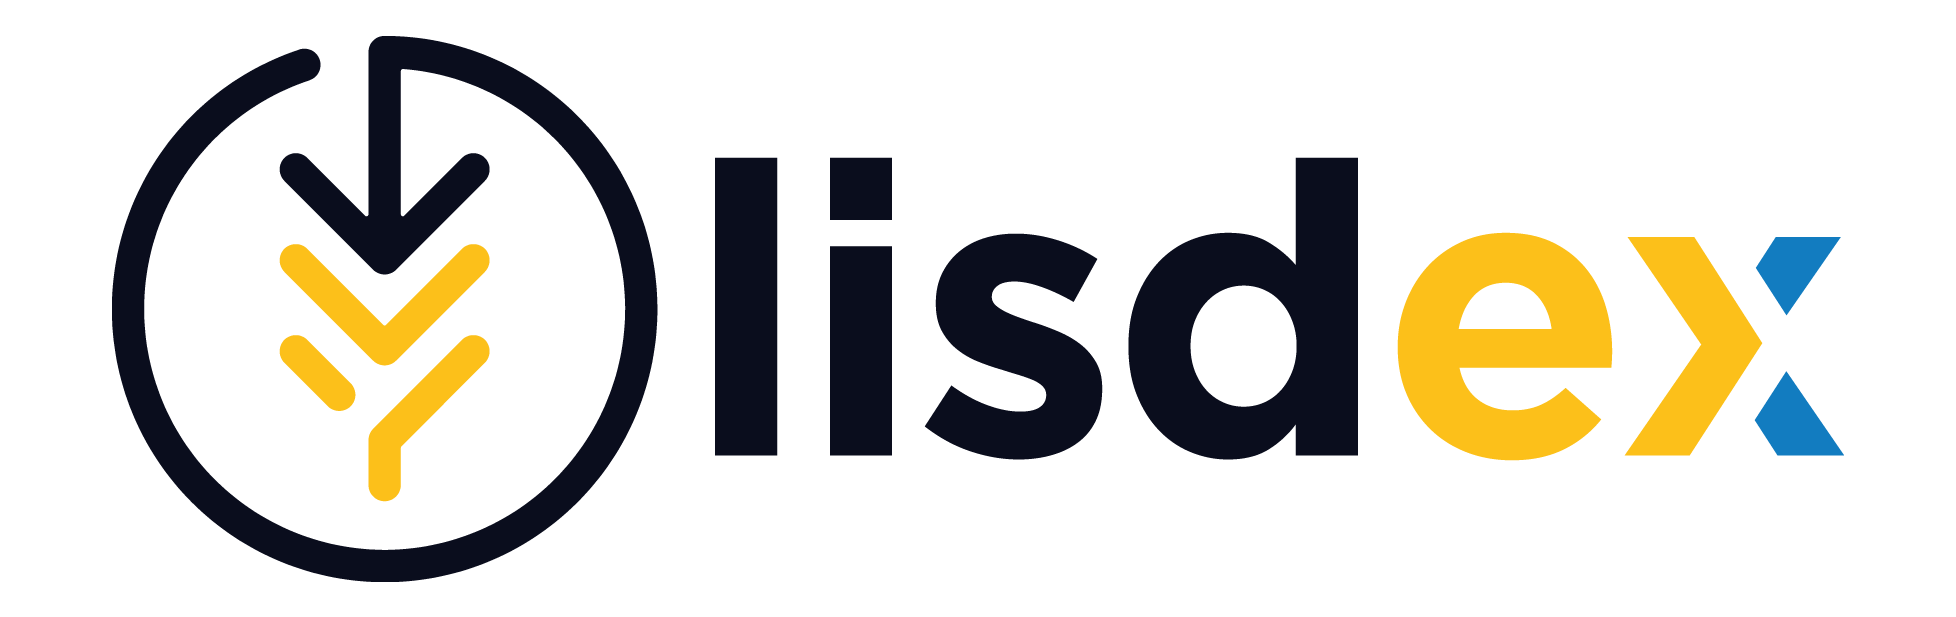 lisdex son logo